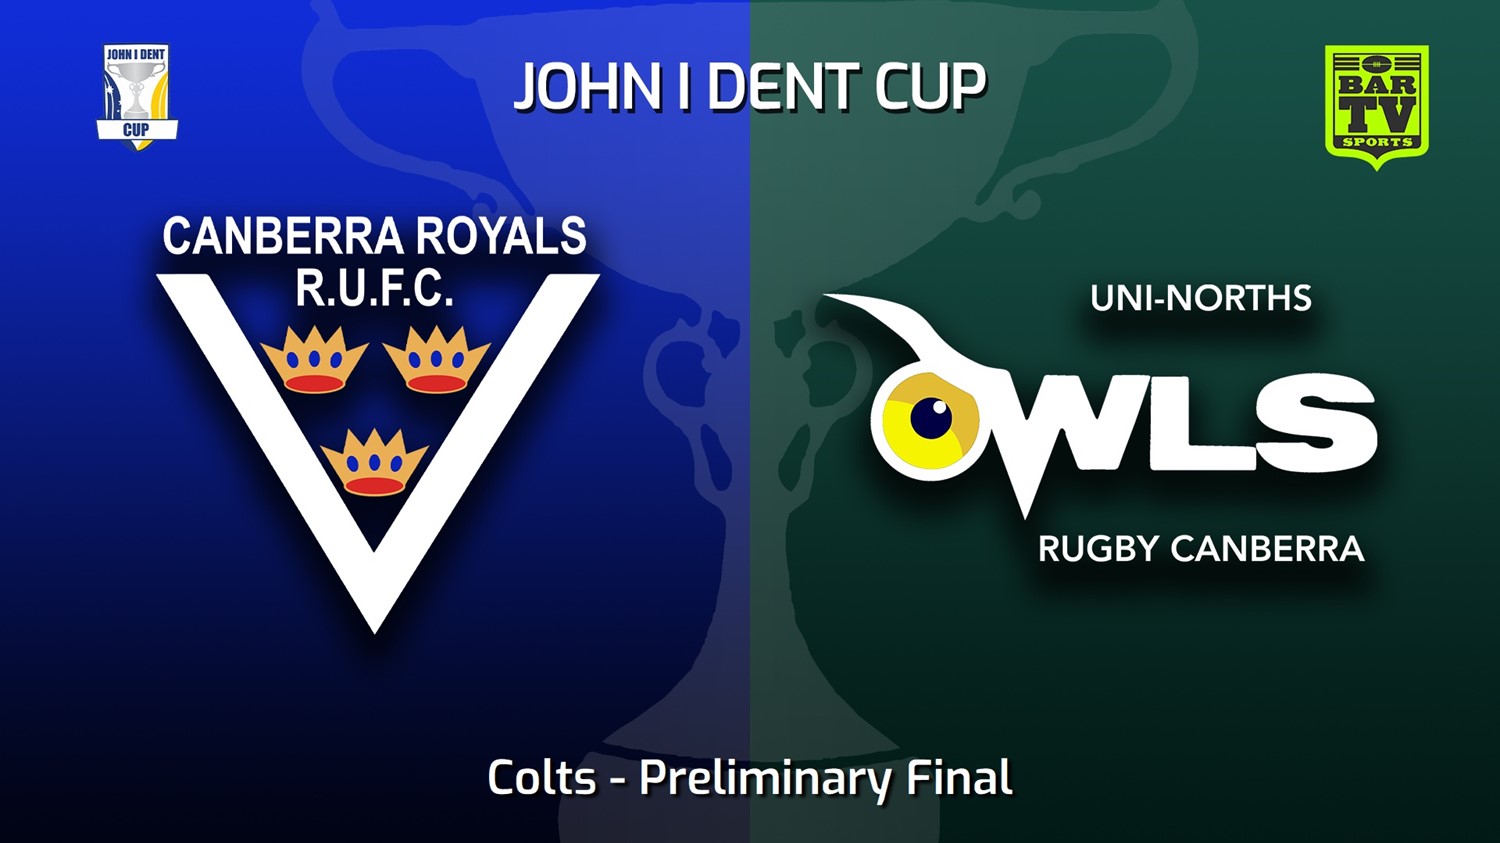 220903-John I Dent (ACT) Preliminary Final - Colts - Canberra Royals v UNI-Norths Slate Image